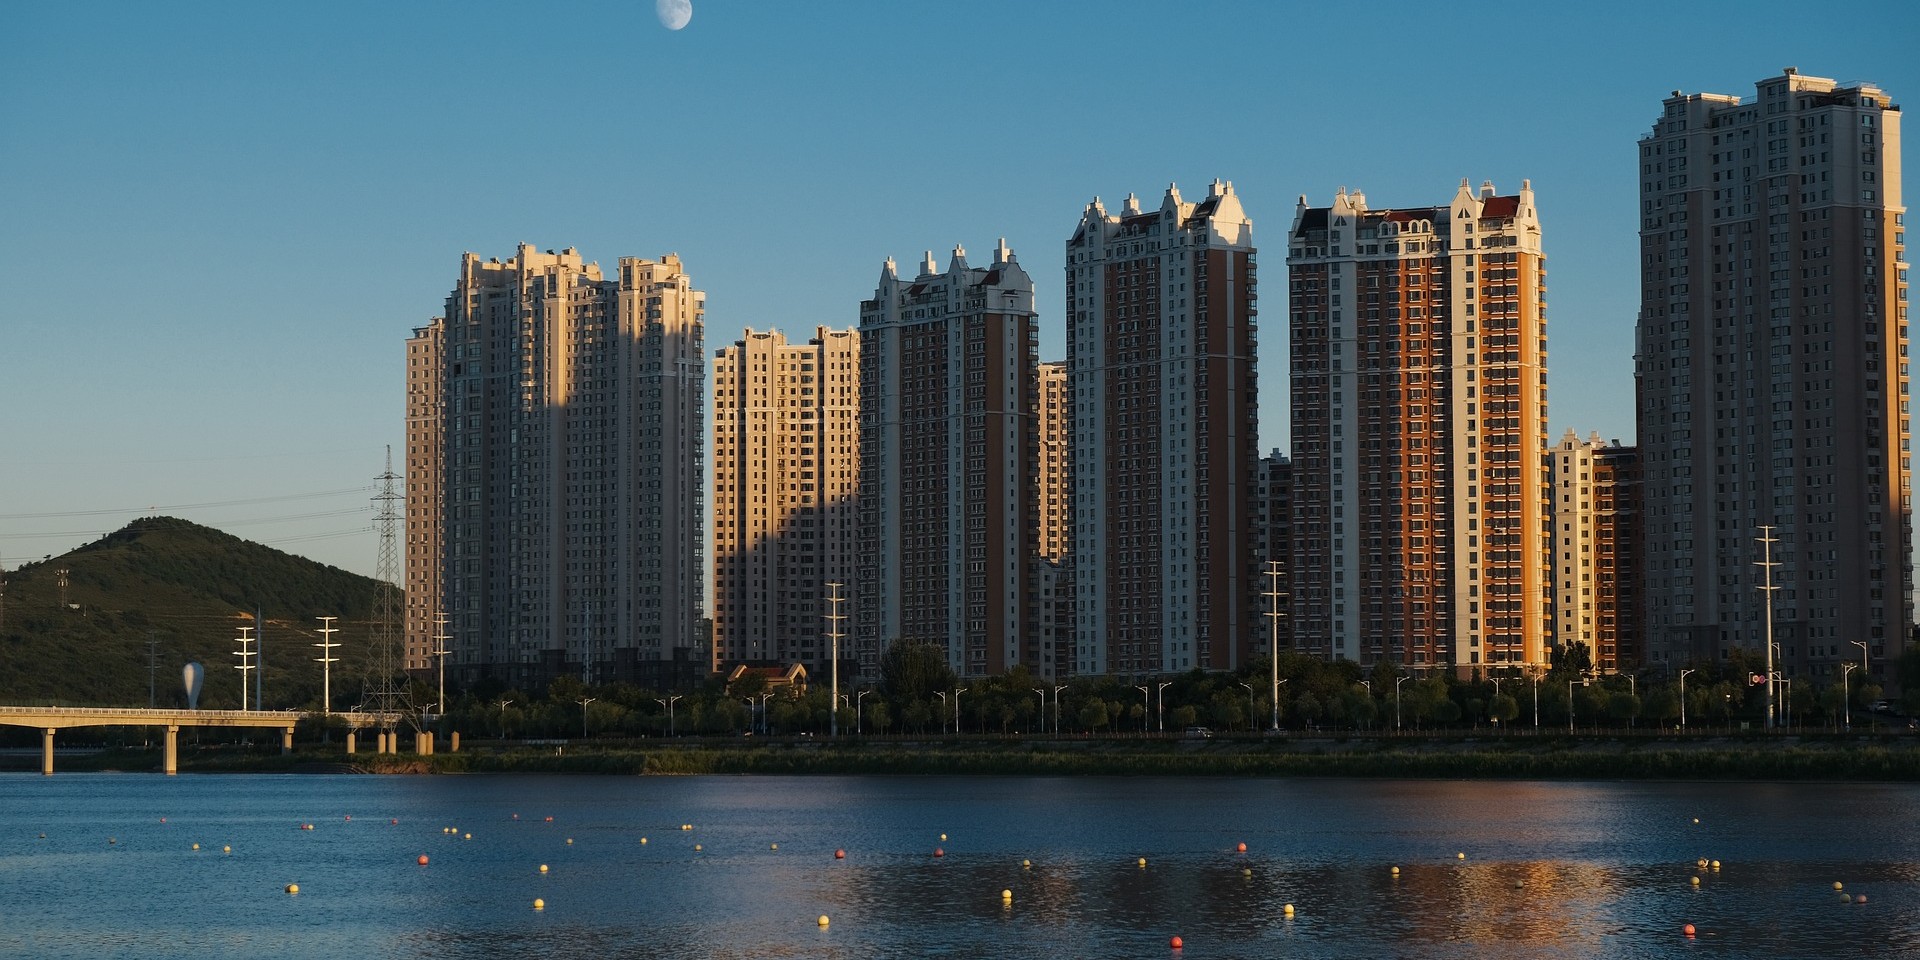 CHINA CITY SPOTLIGHT: JINZHOU